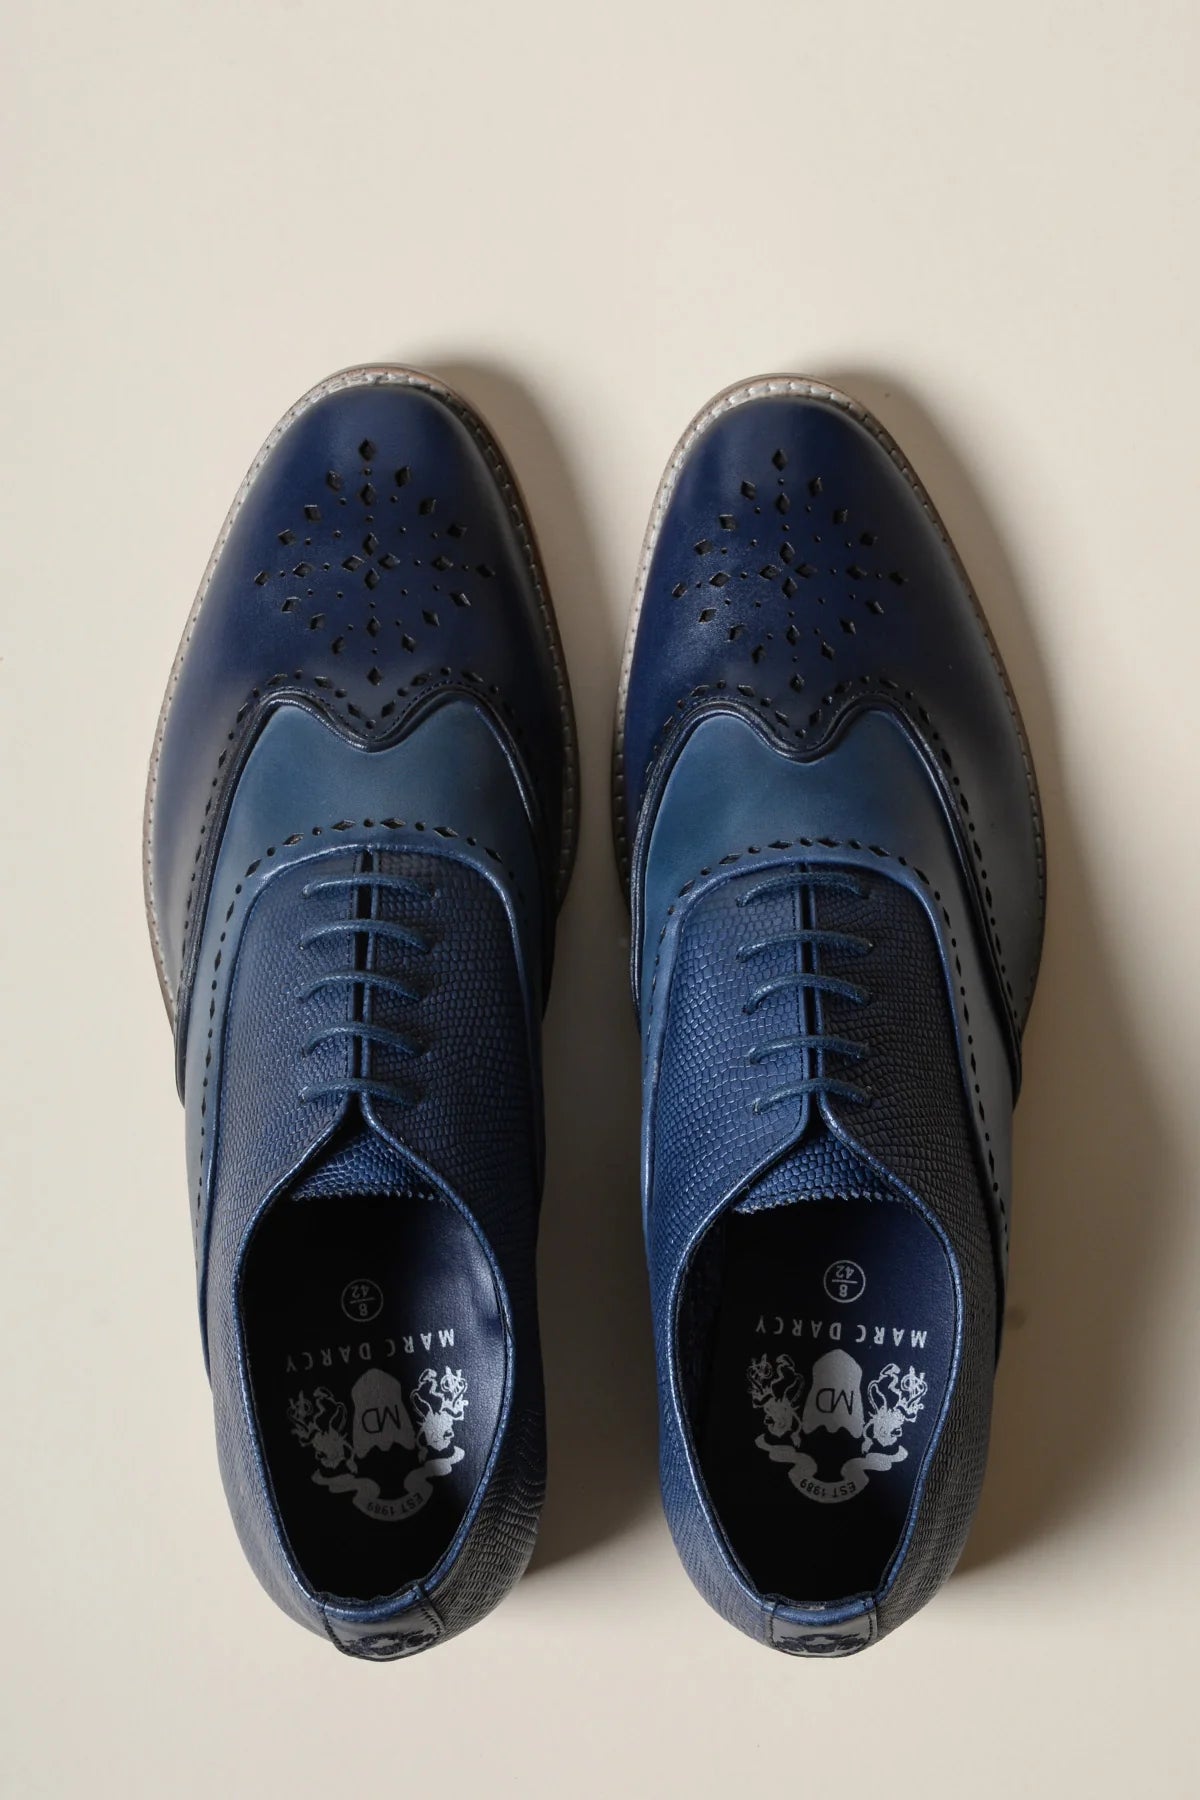 Chaussures en cuir blue marine Ryan Wingtip Brogues - Marc Darcy